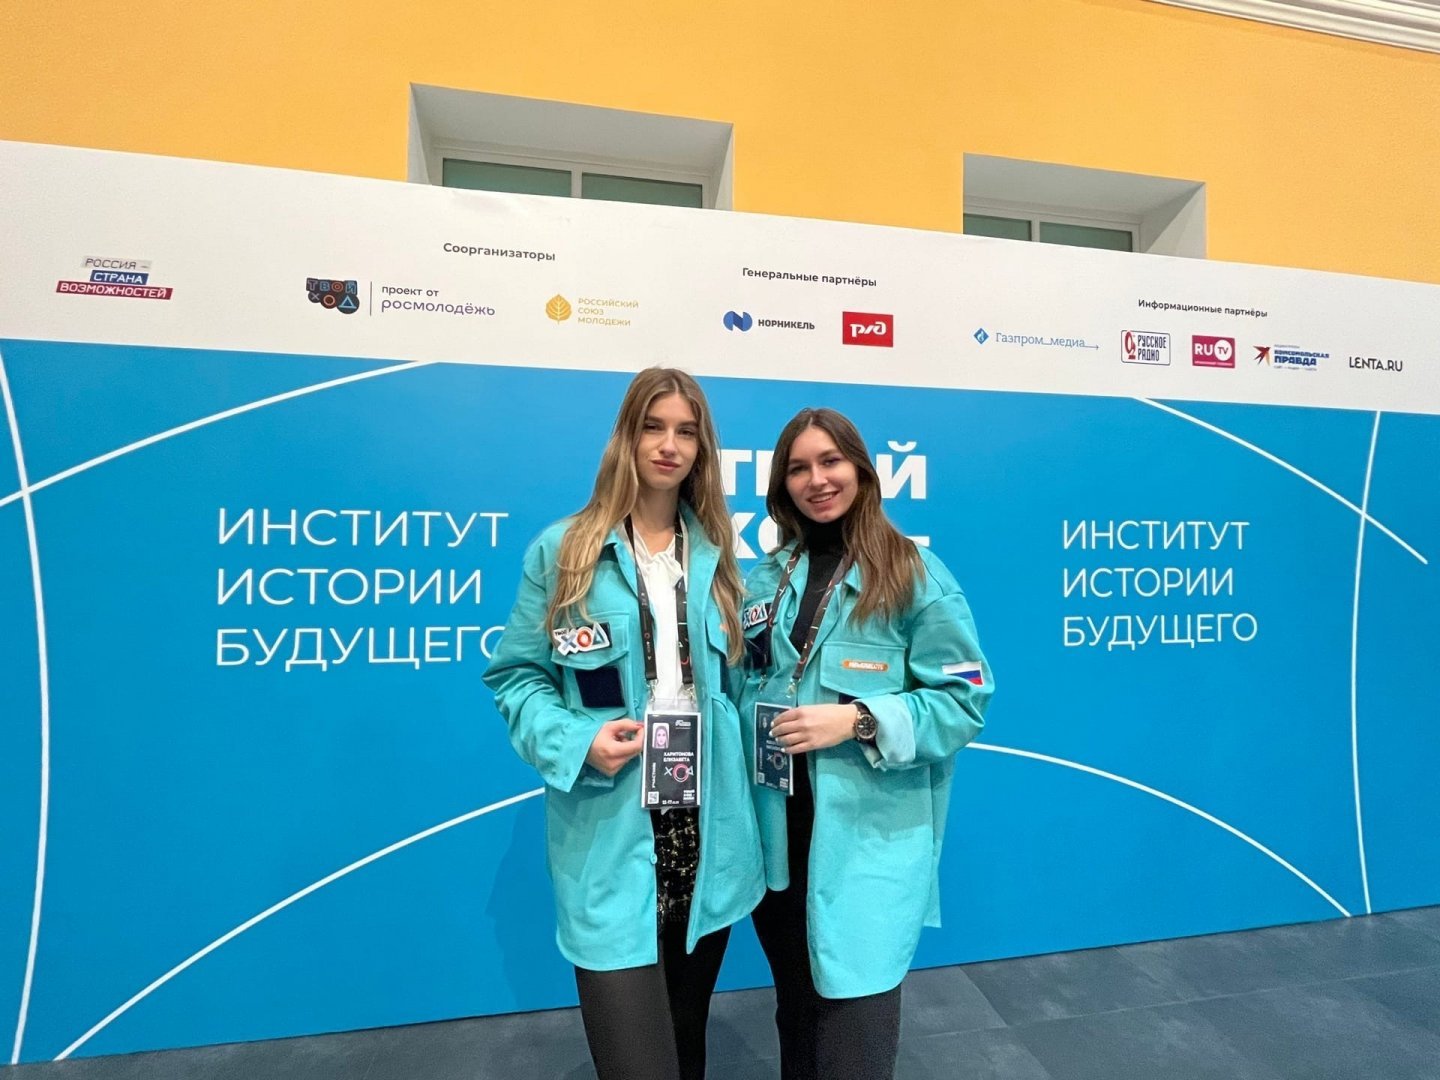 Студенты ЮЗГУ отправились на Всероссийский студенческий форум